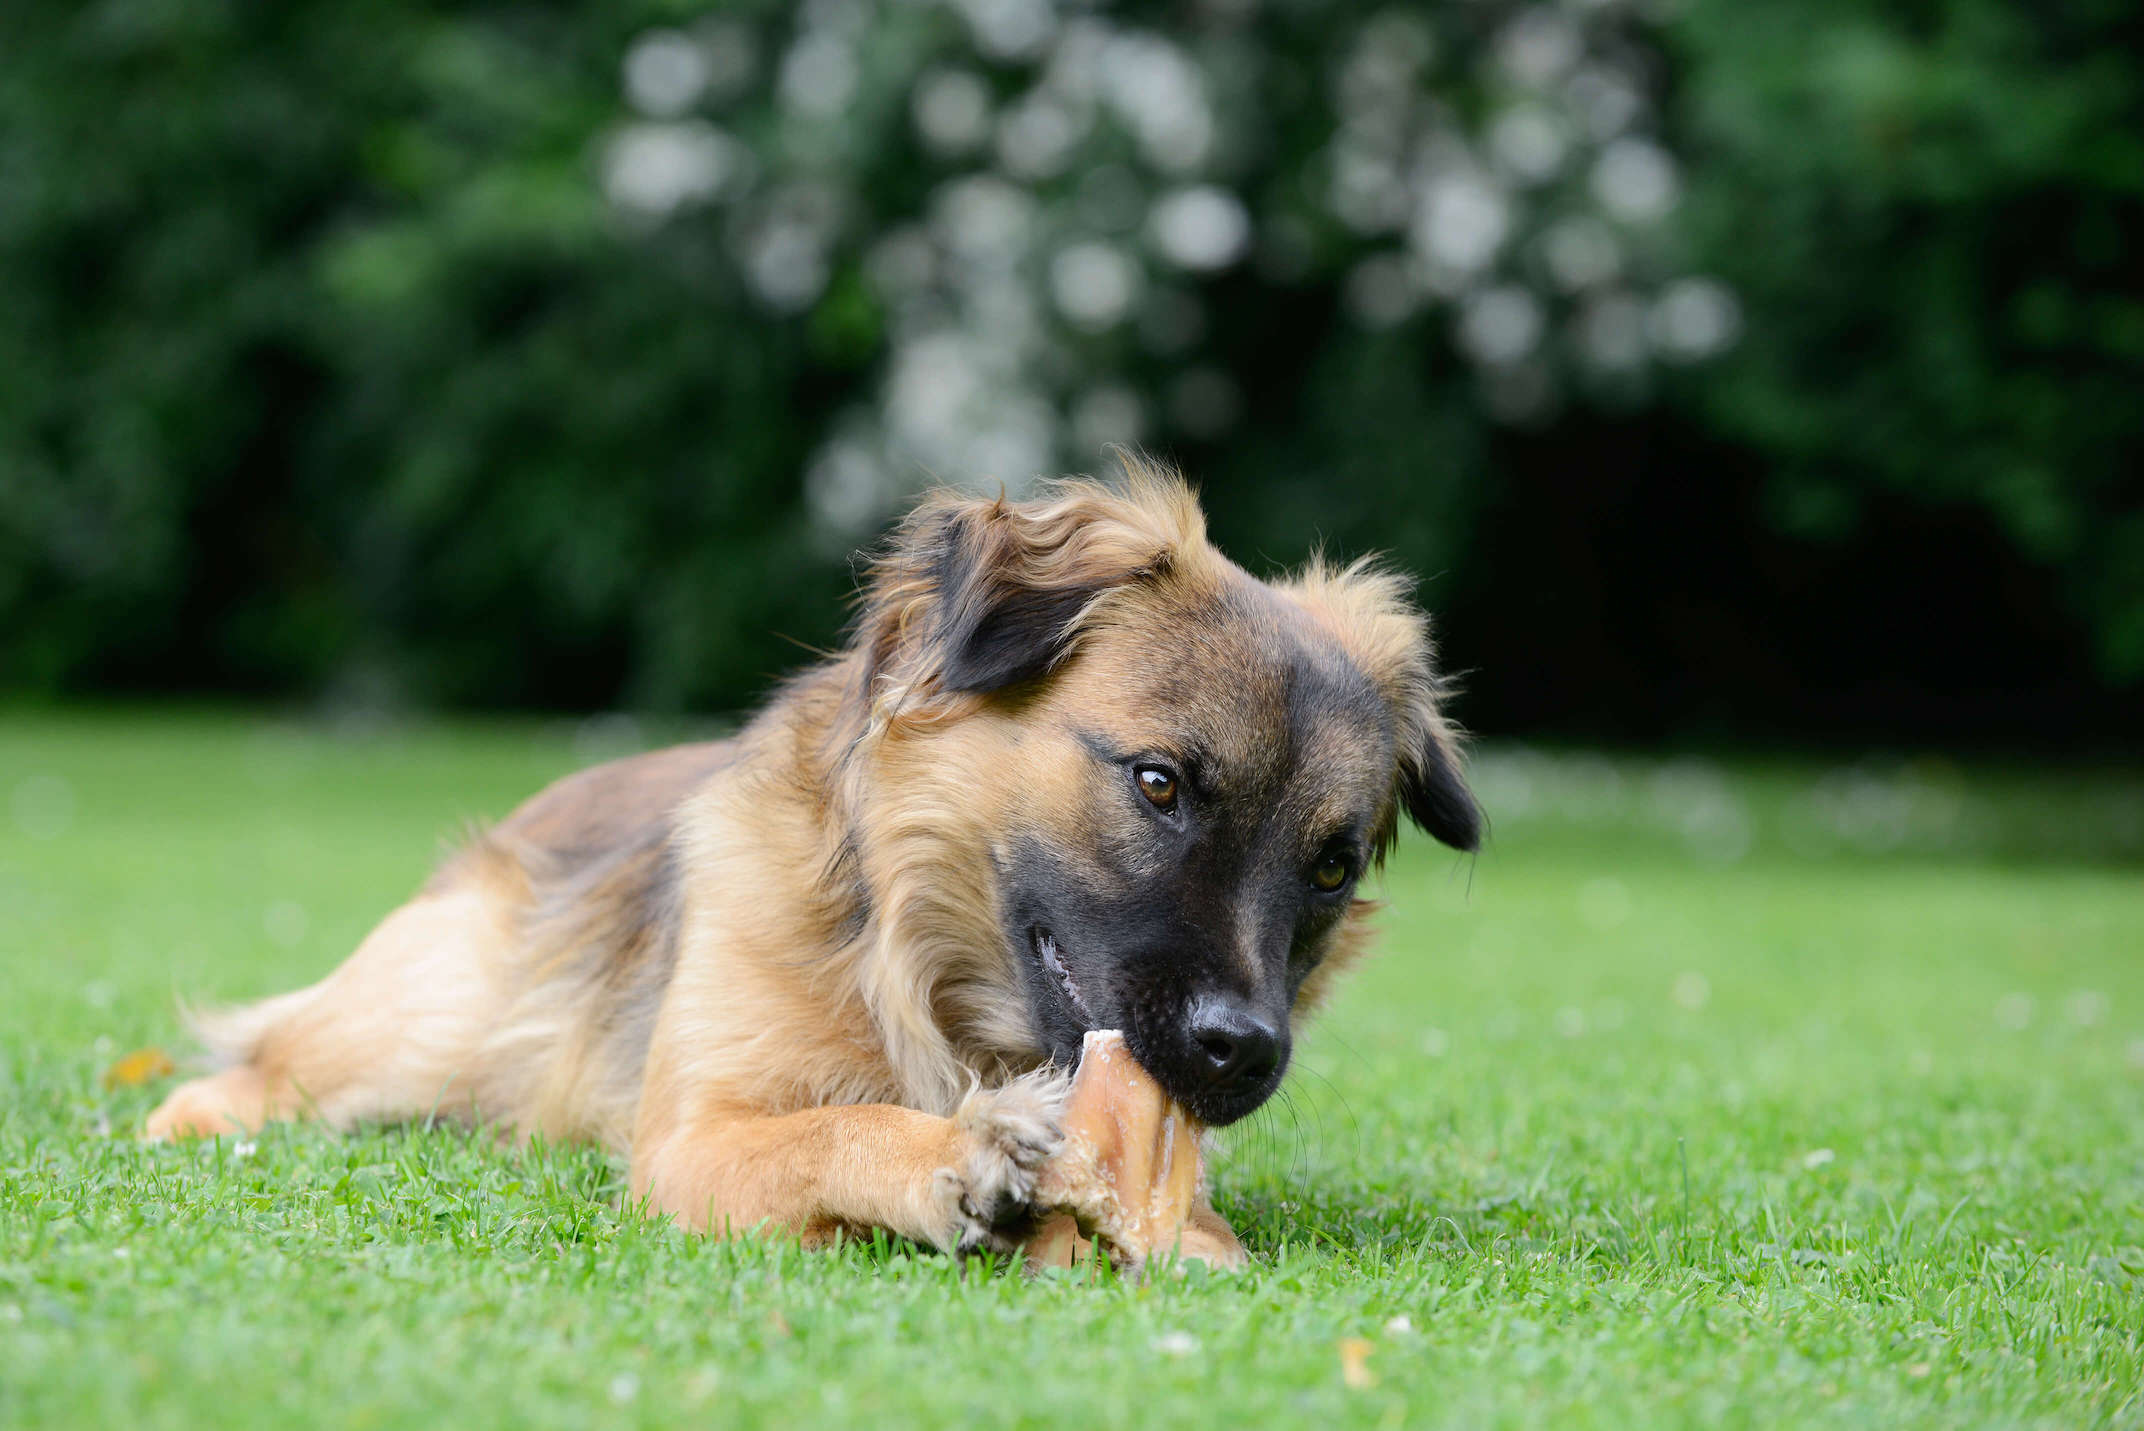 Schwrazbrauner Hund kaut eine kaustange im kurzen Gras